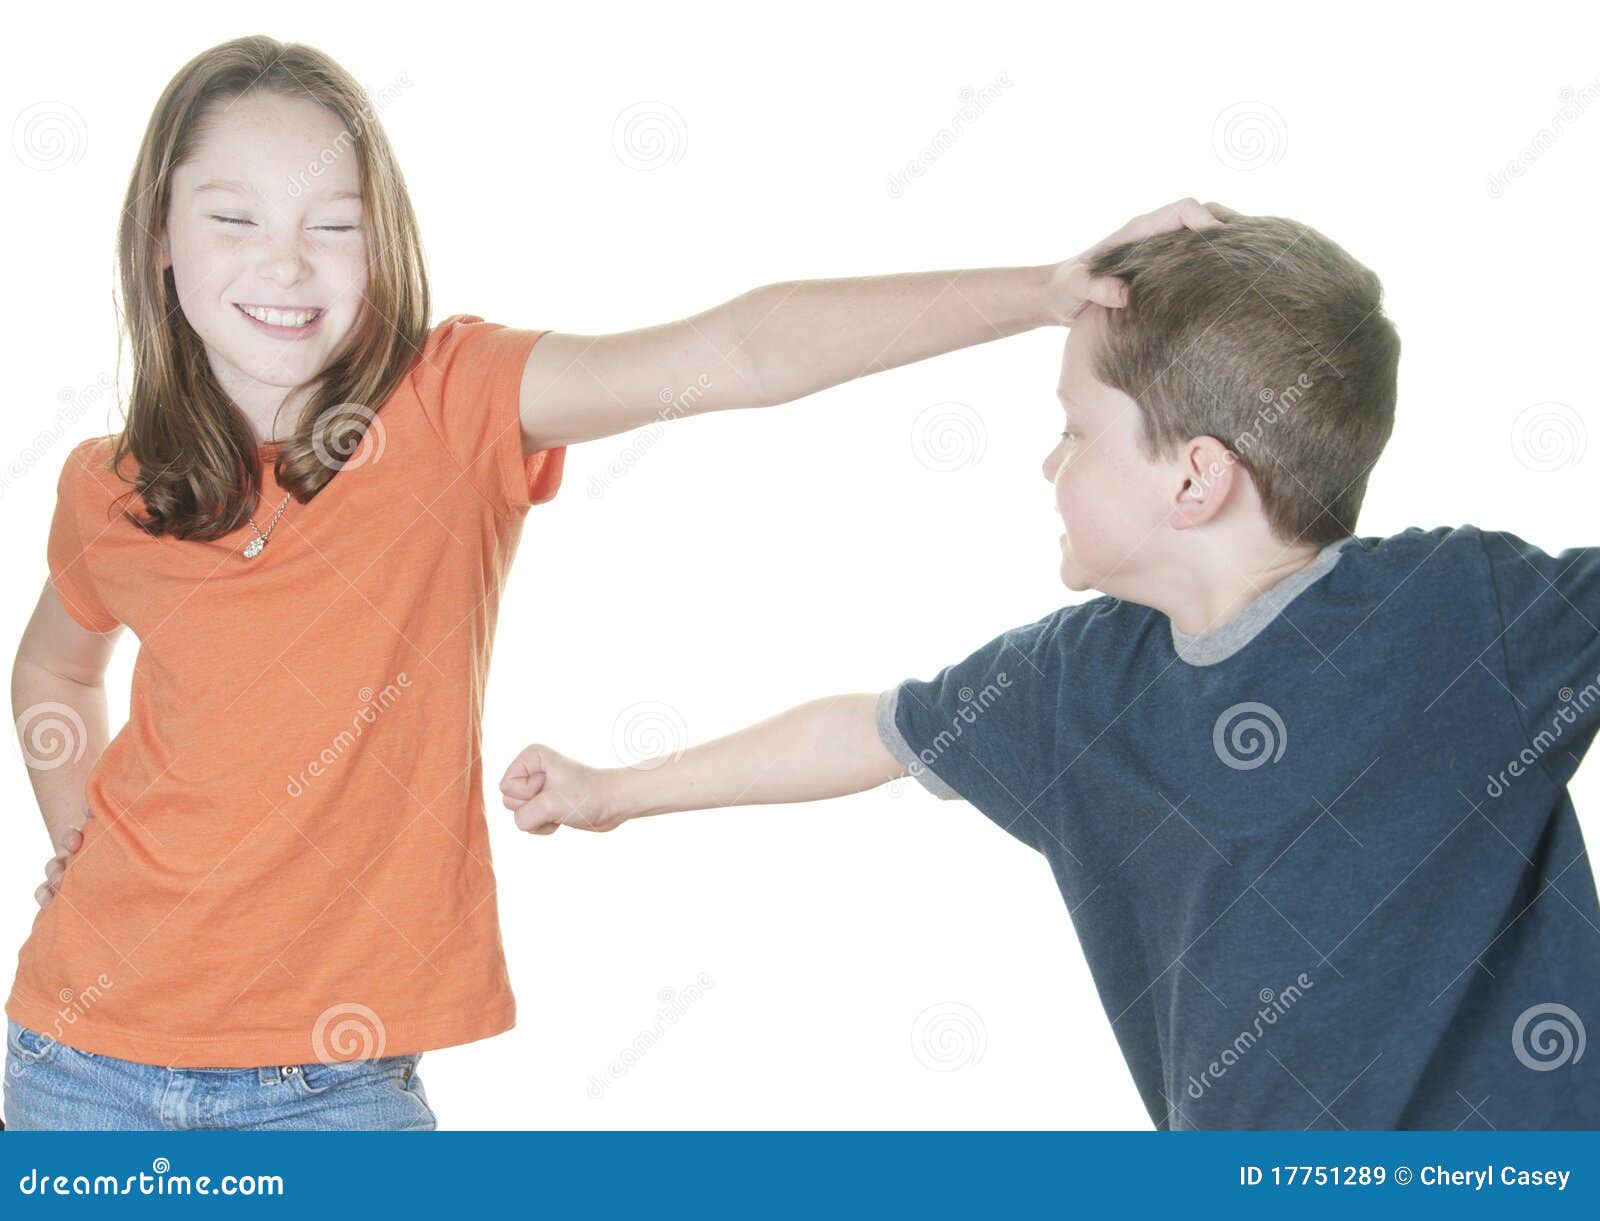 guy teasing young girl